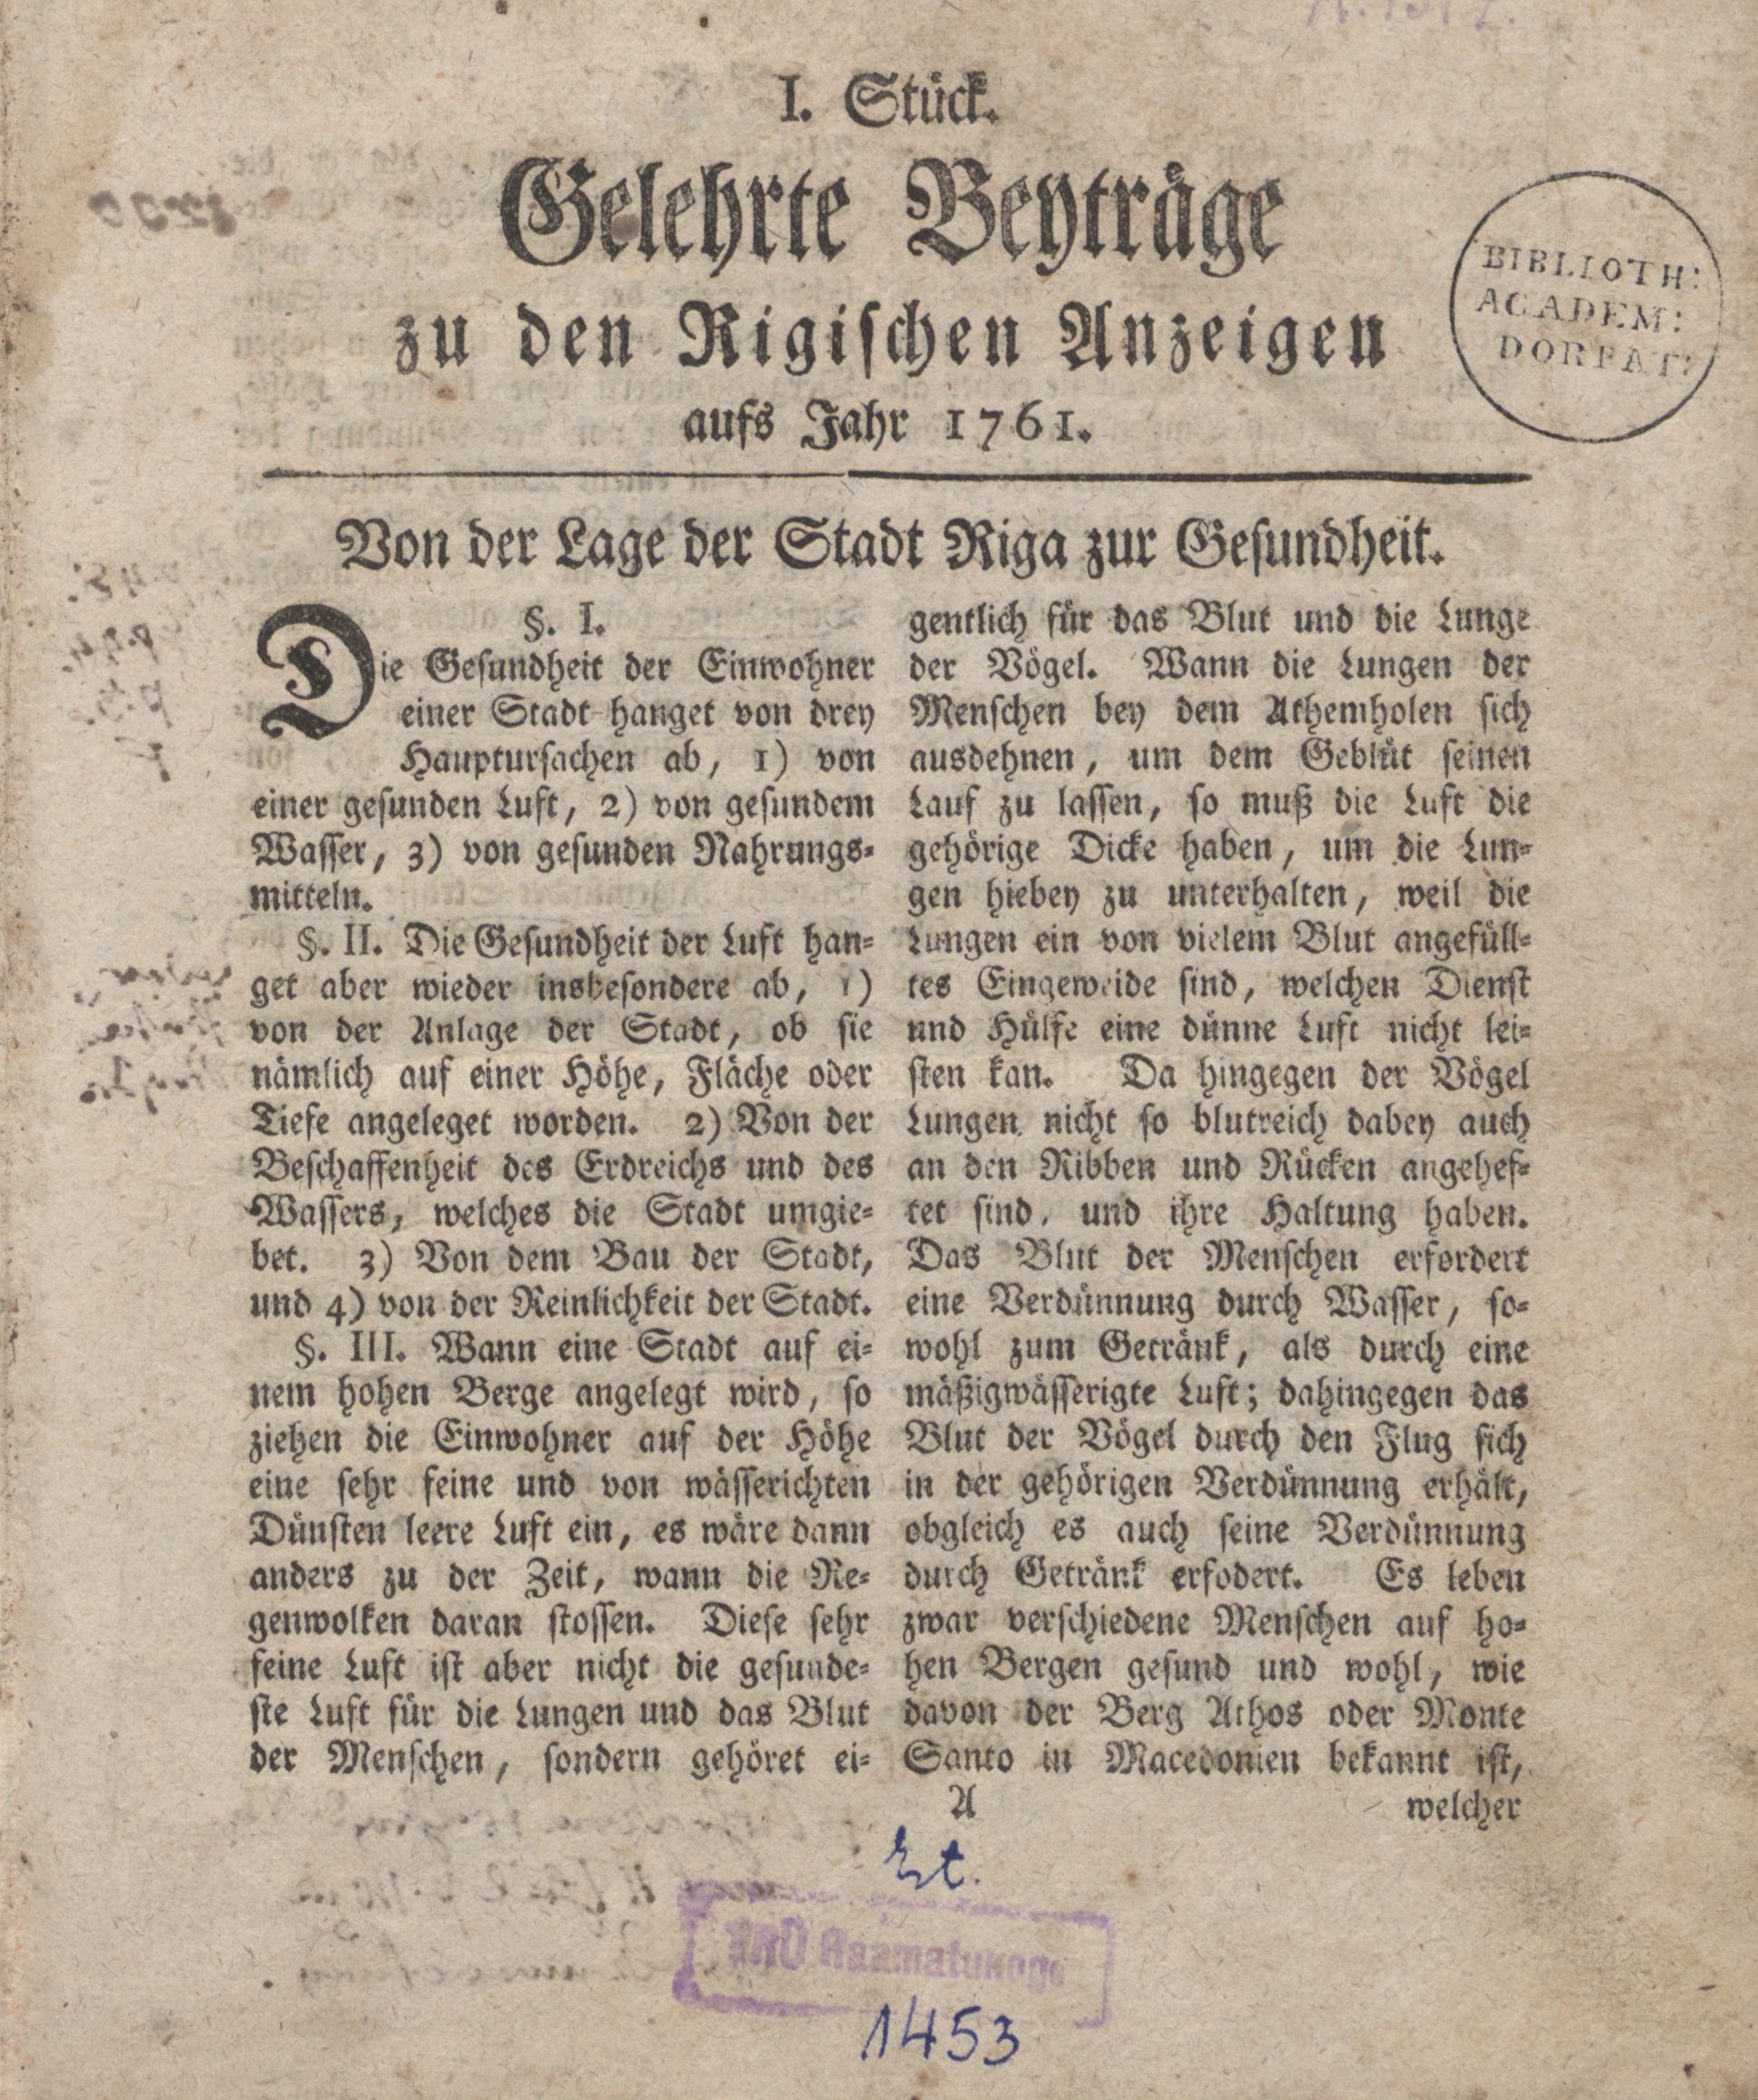 Gelehrte Beyträge zu den Rigischen Anzeigen (1761 – 1767) | 1. (1) Титульный лист